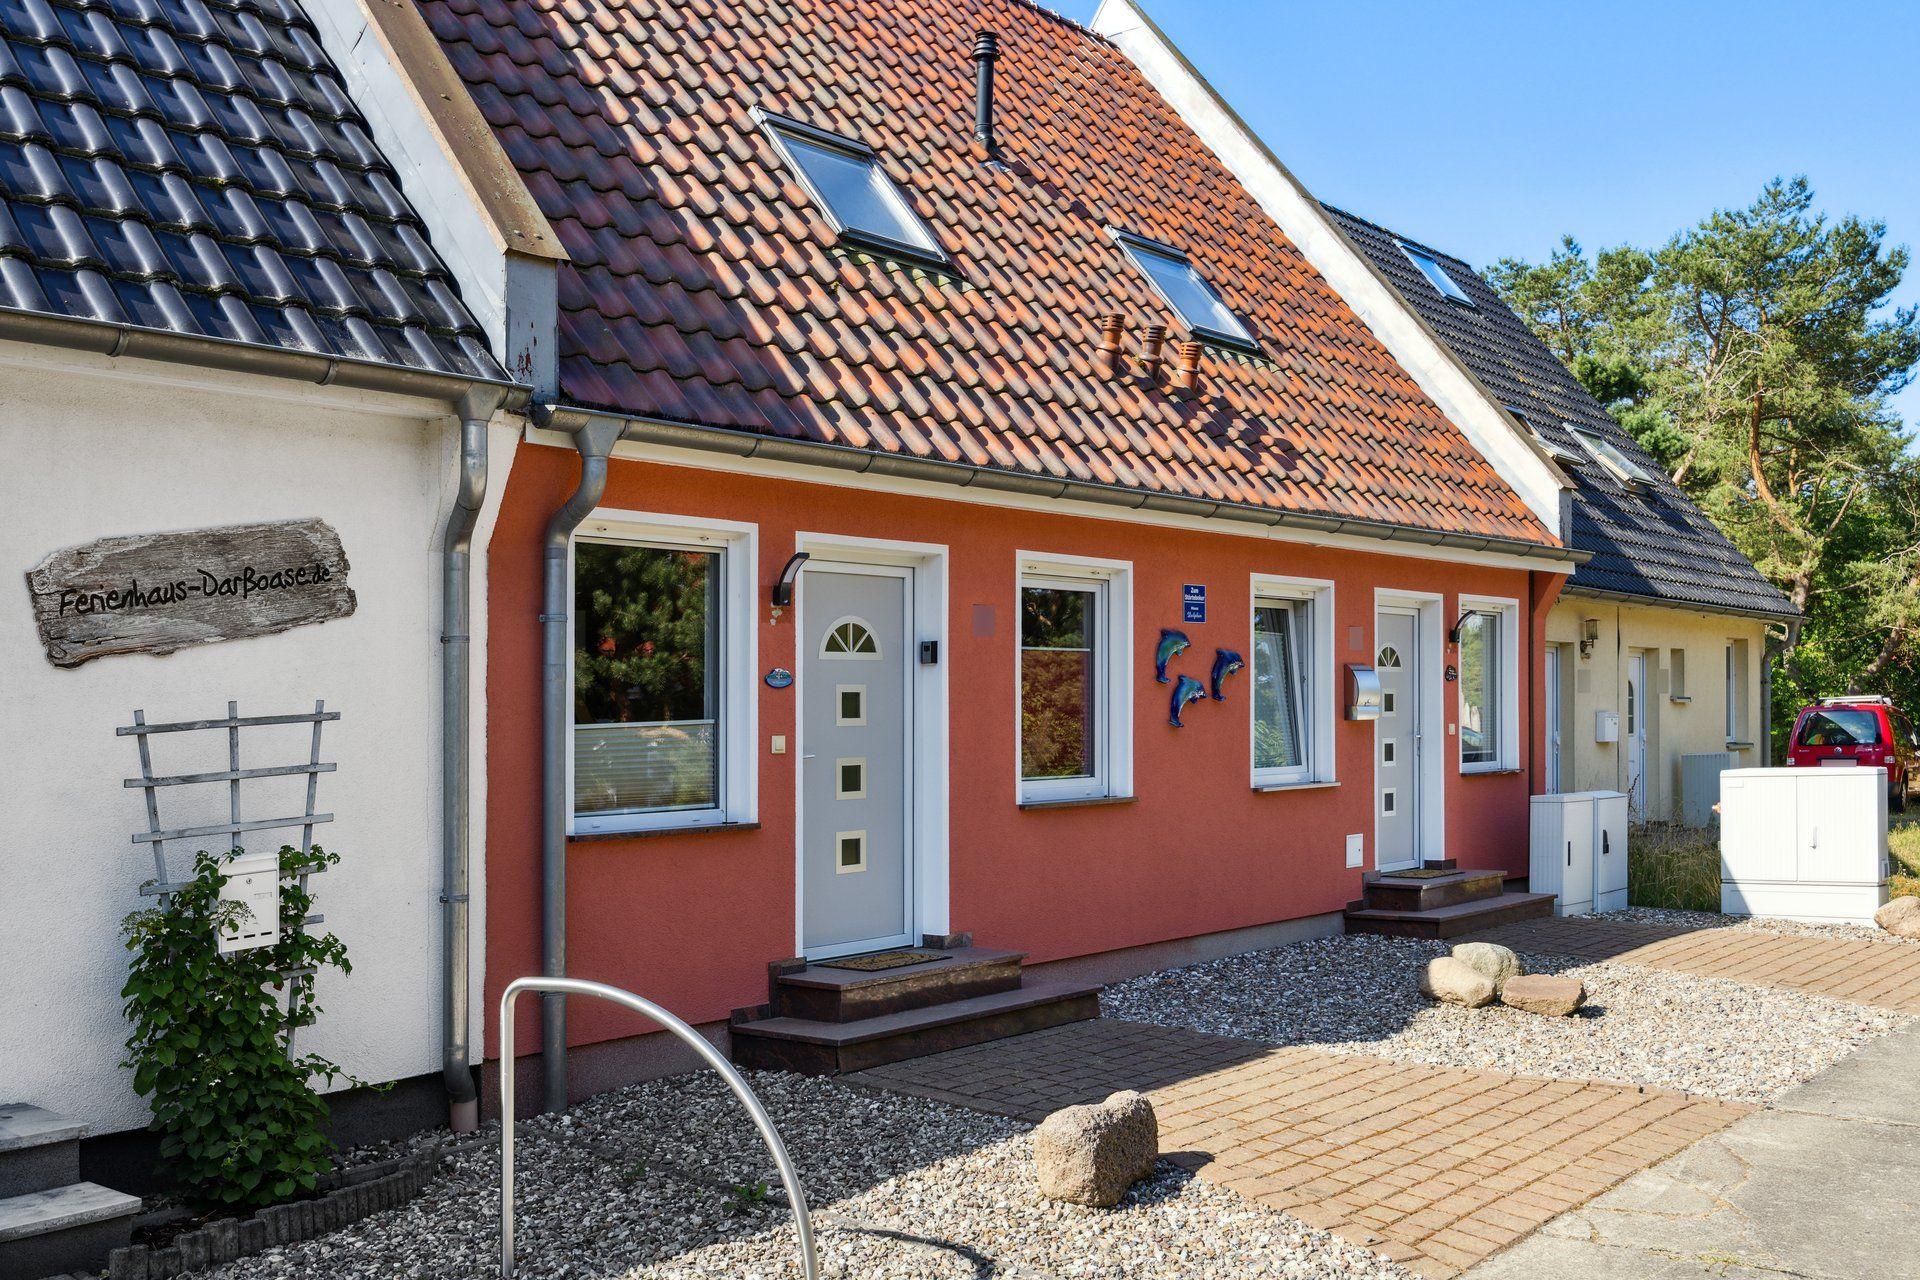 Ferienhaus in Pruchten mit Terrasse, Grill und Gar  in Deutschland